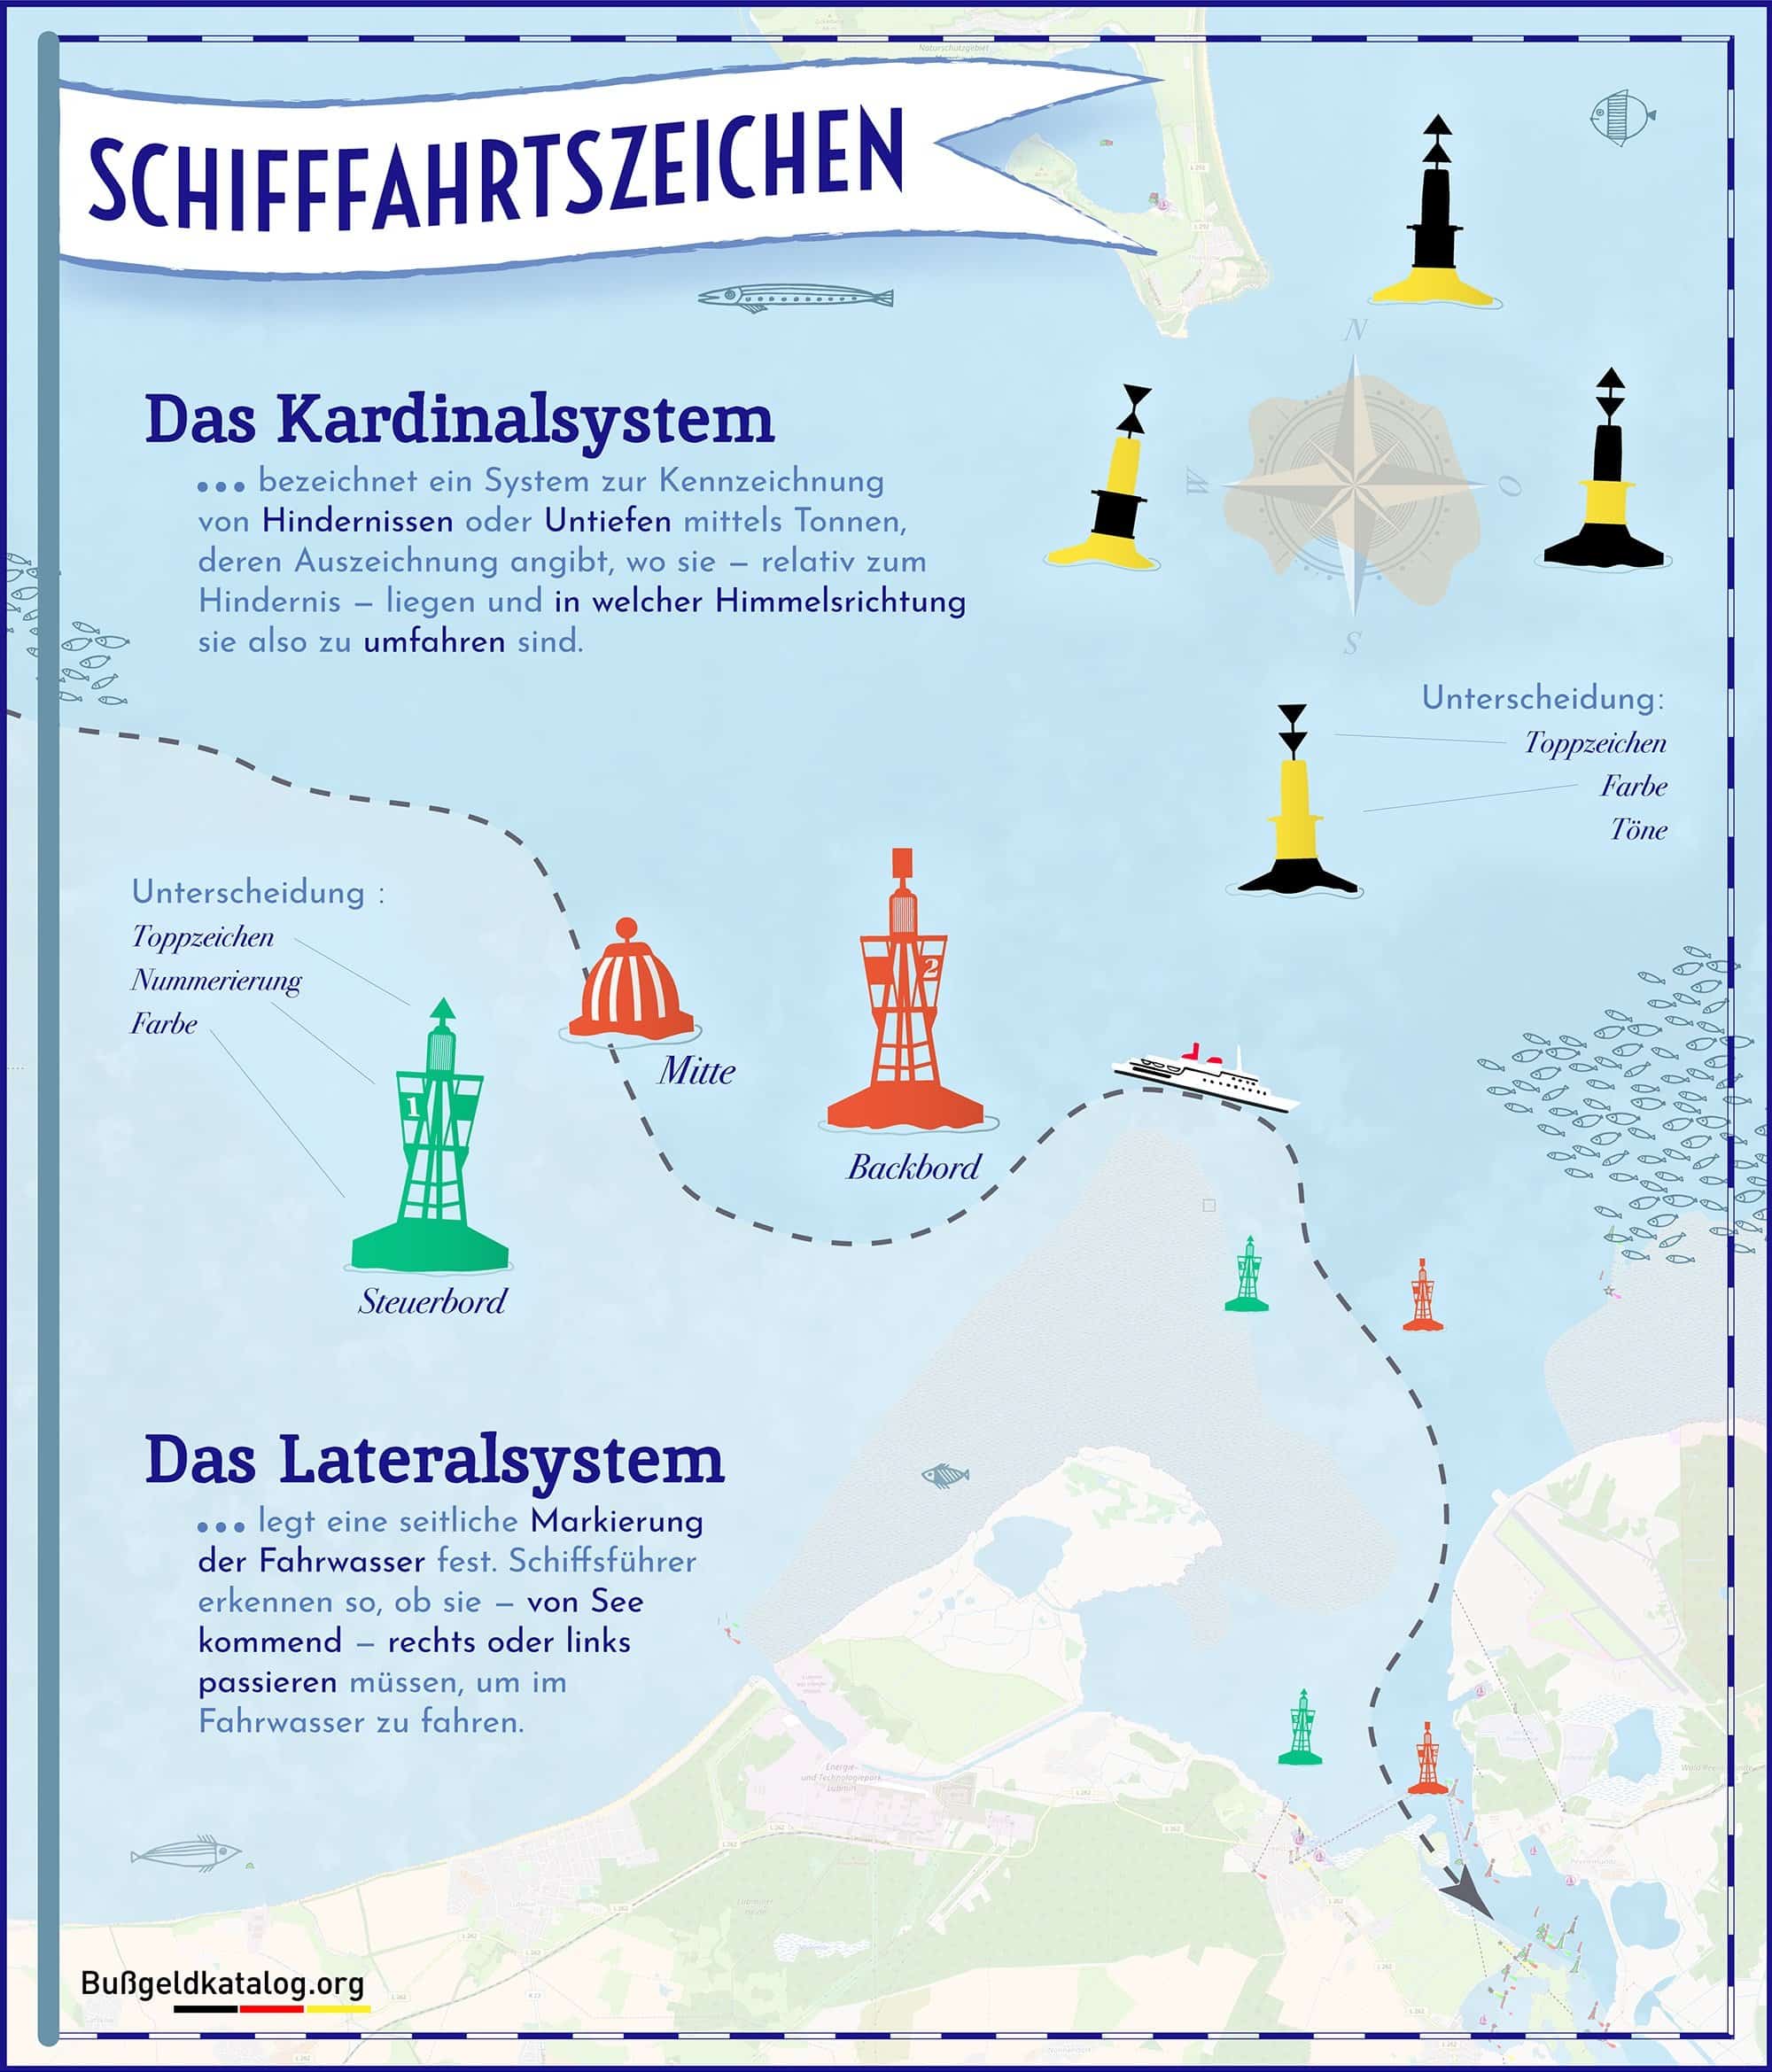 Schifffahrtszeichen und deren Bedeutung - Schifffahrt 2021